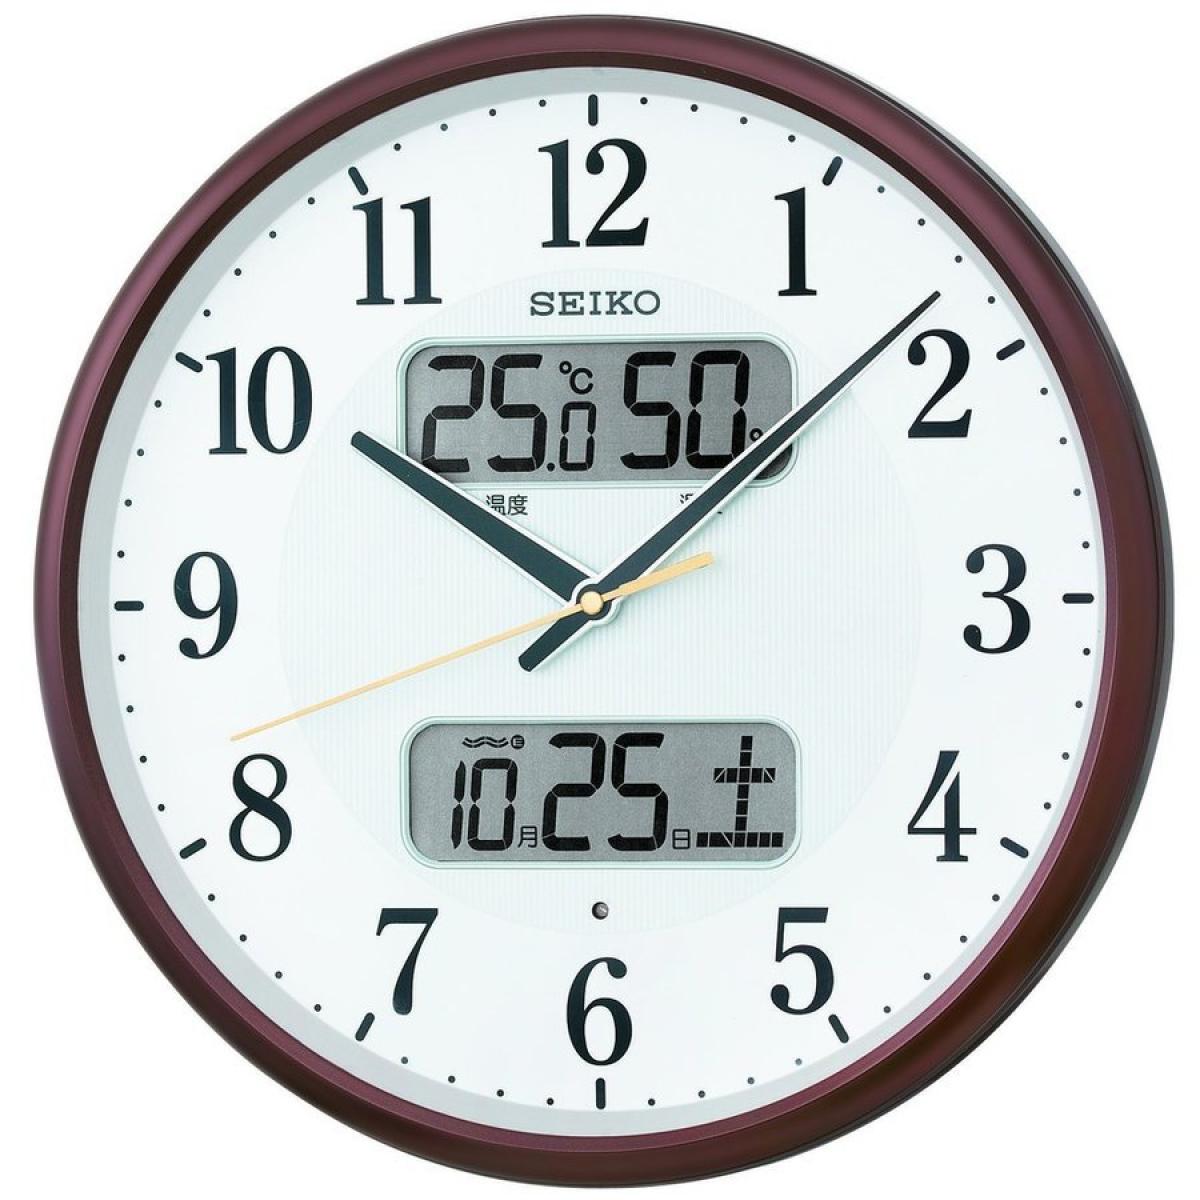 セイコークロック 掛け時計 茶メタリック 直径35.0x5.2cm 電波 アナログ カレンダー 温度 湿度 表示 KX383B